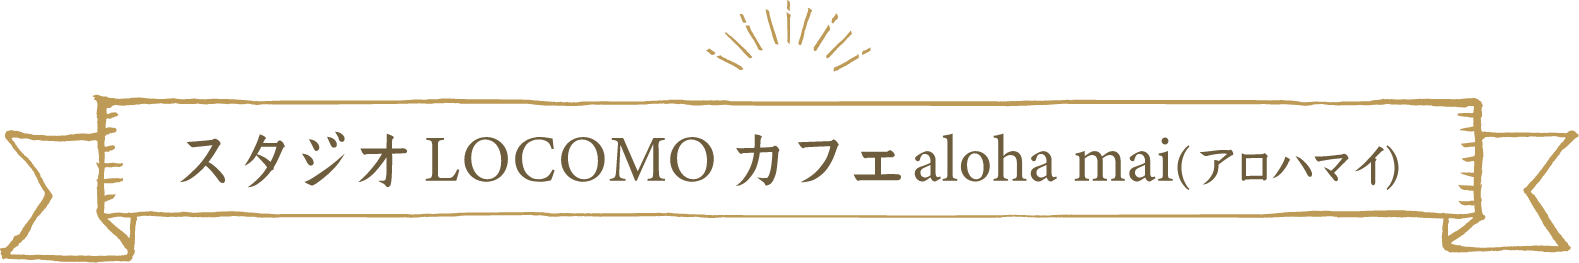 スタジオ LOCOMO カフェ aloha mai